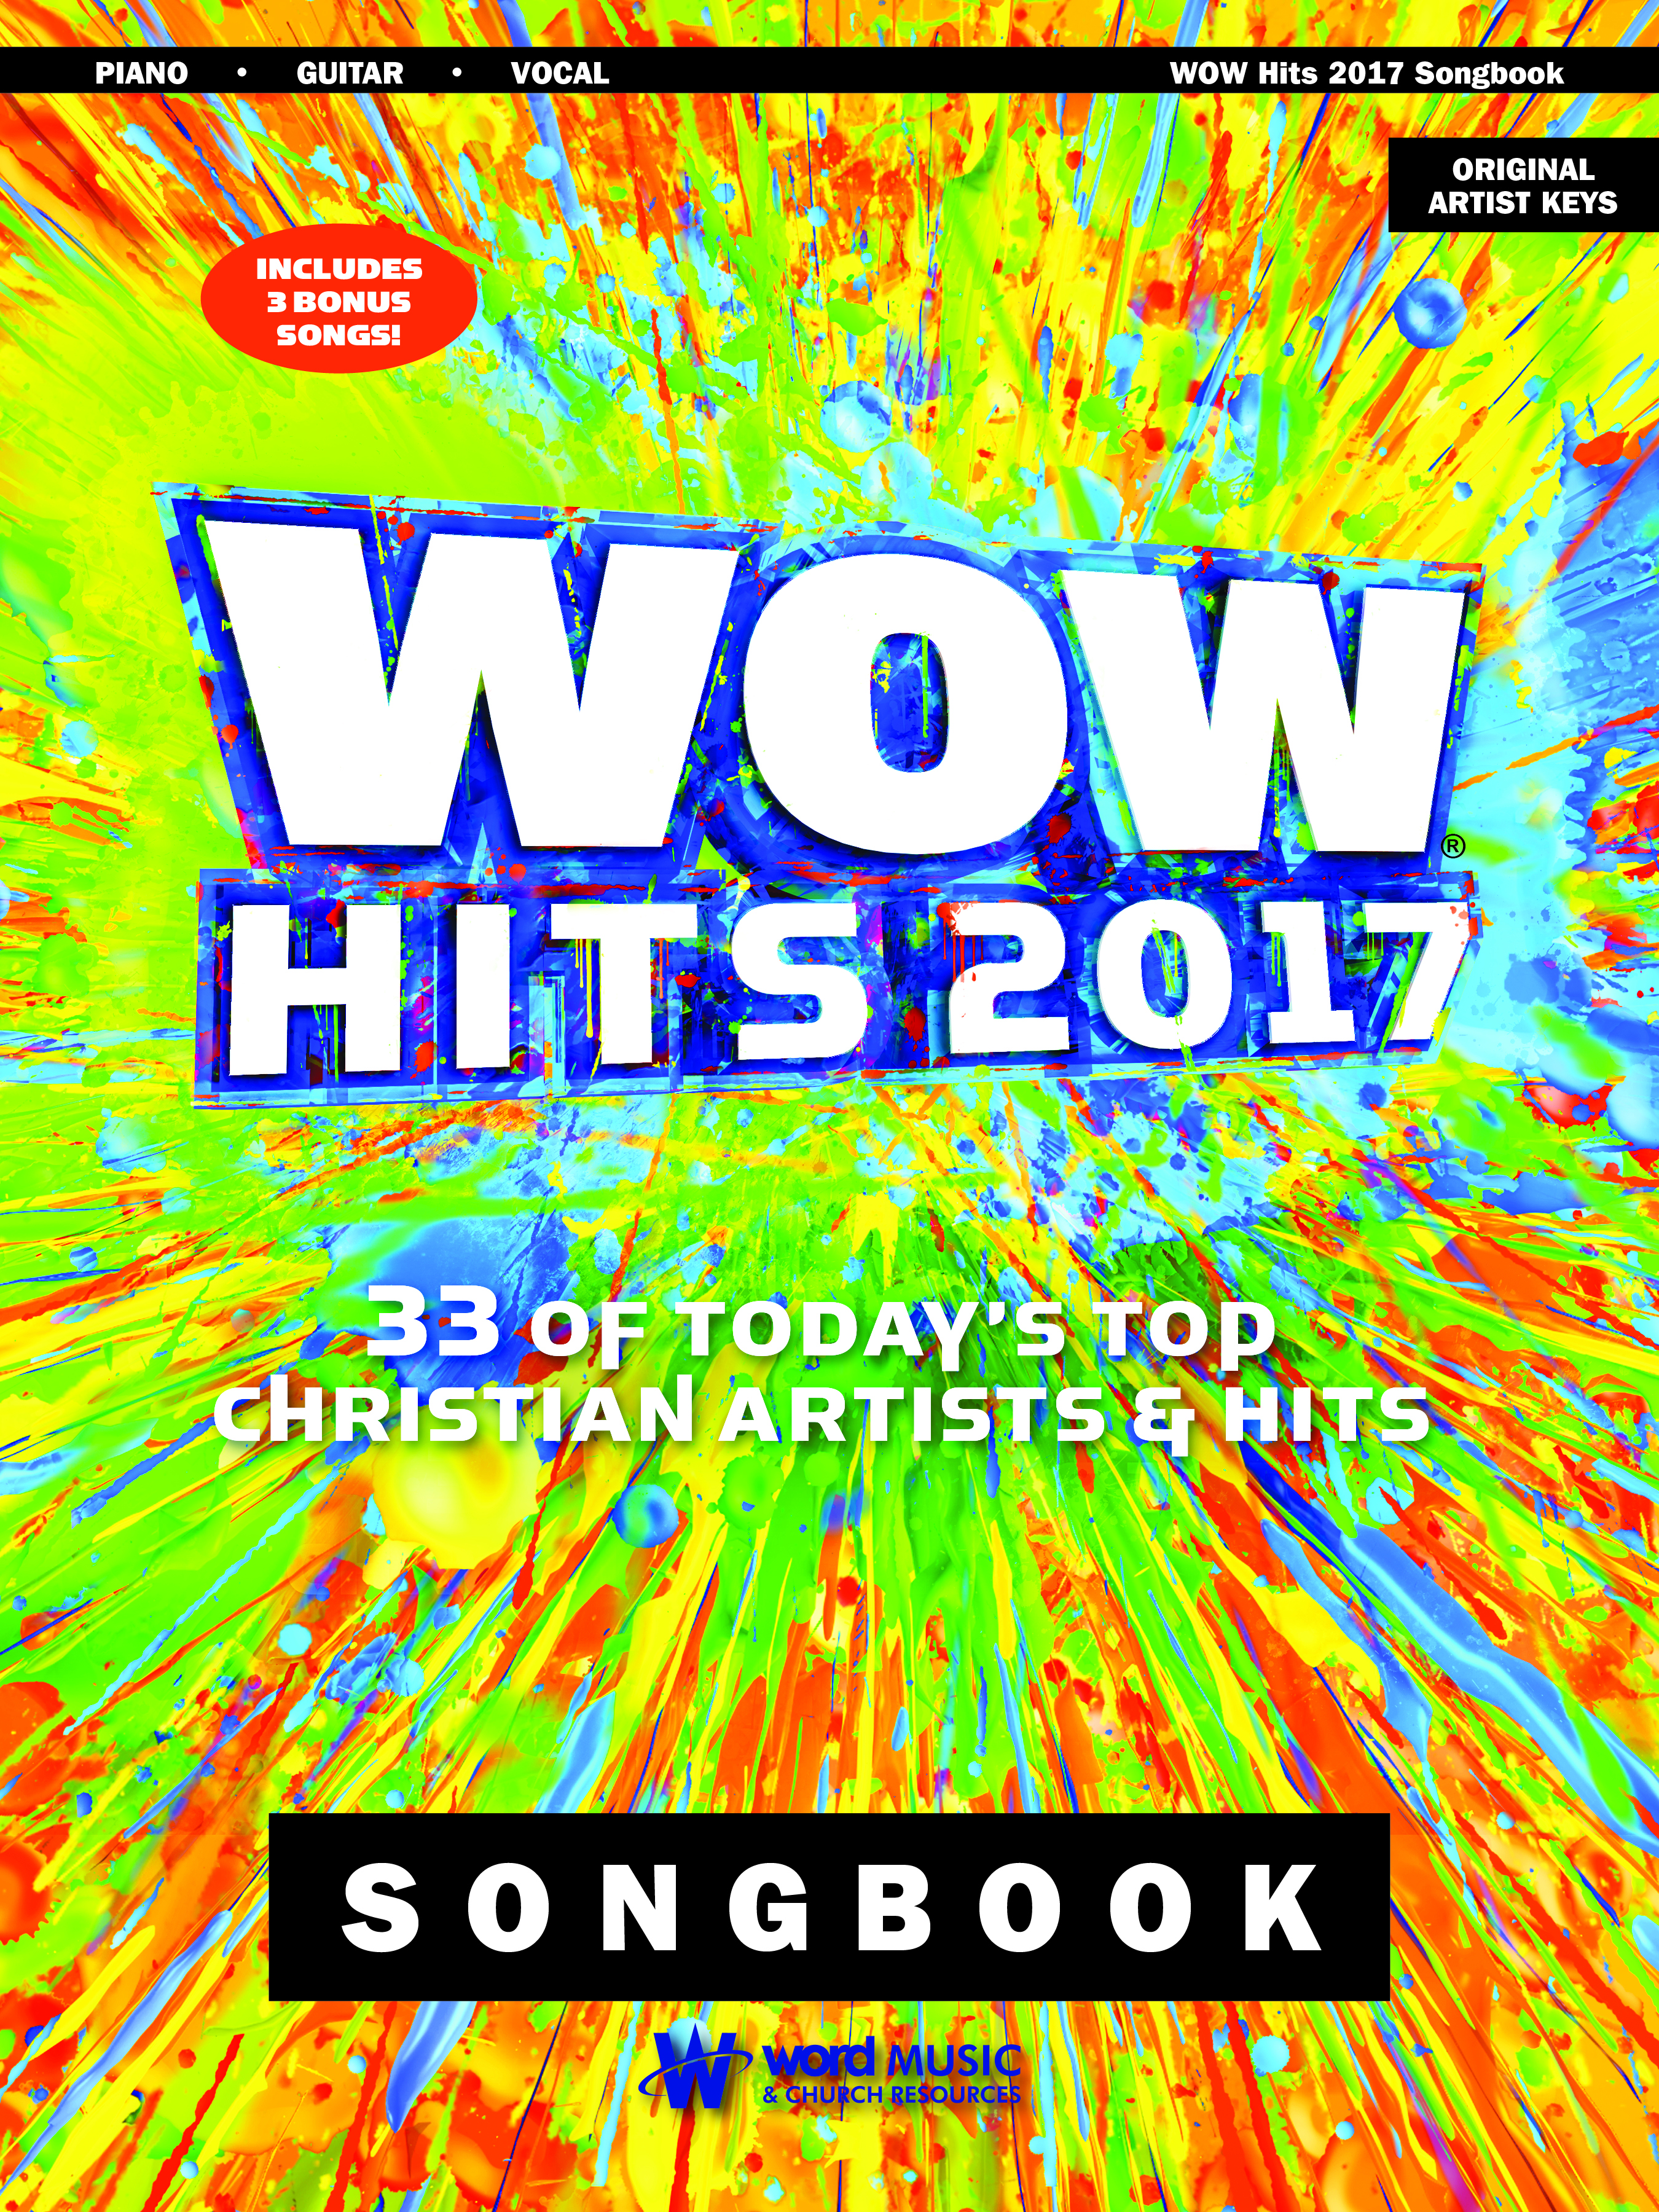 Wow Hits 2017